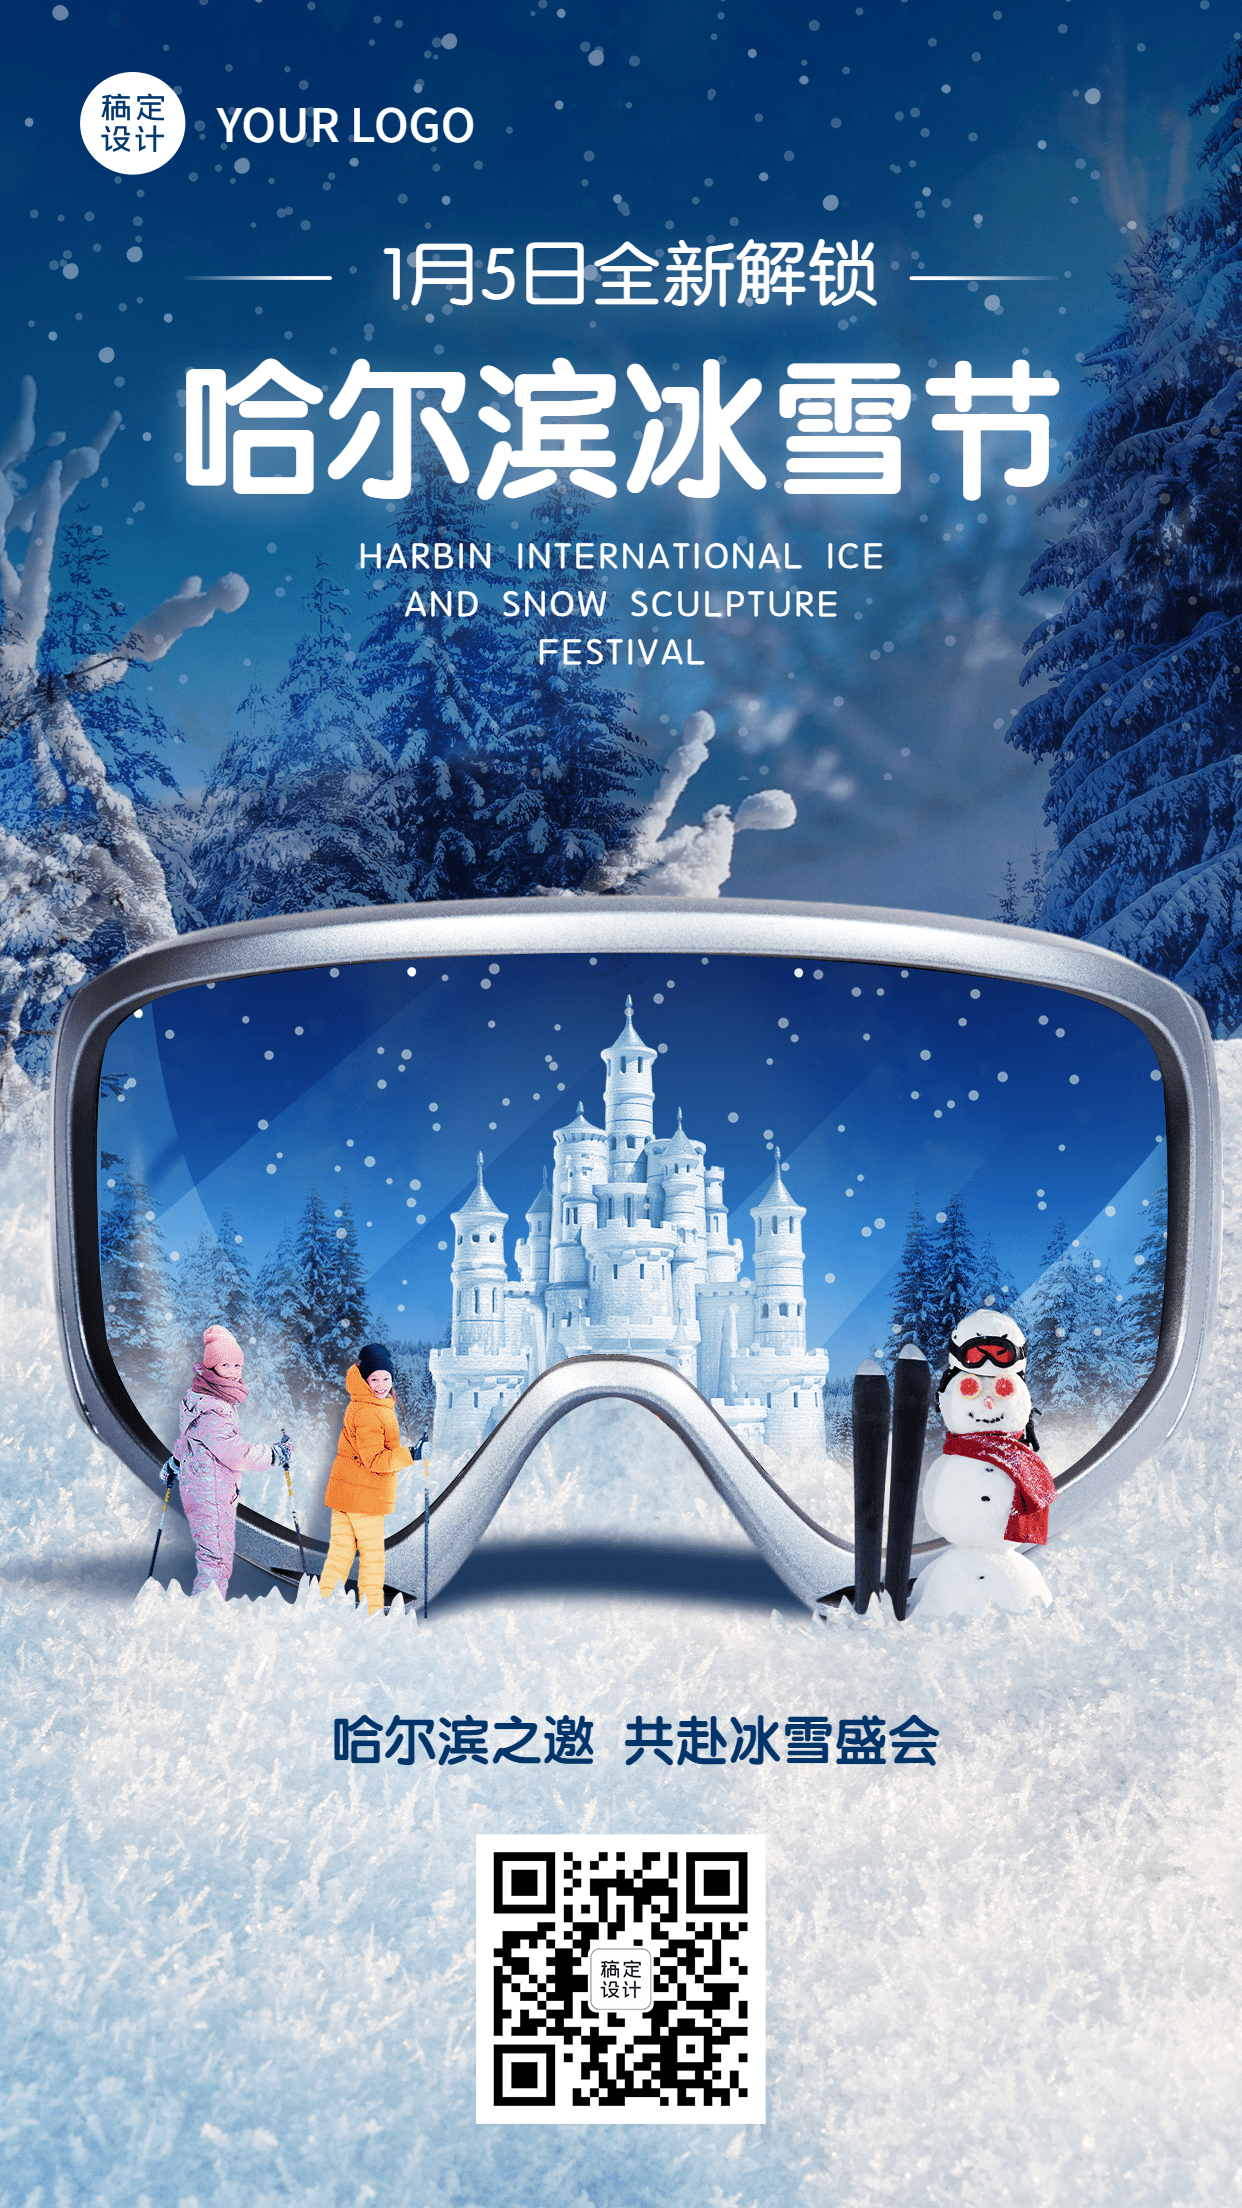 冬季旅游哈尔滨国际冰雪节活动宣传实景海报预览效果